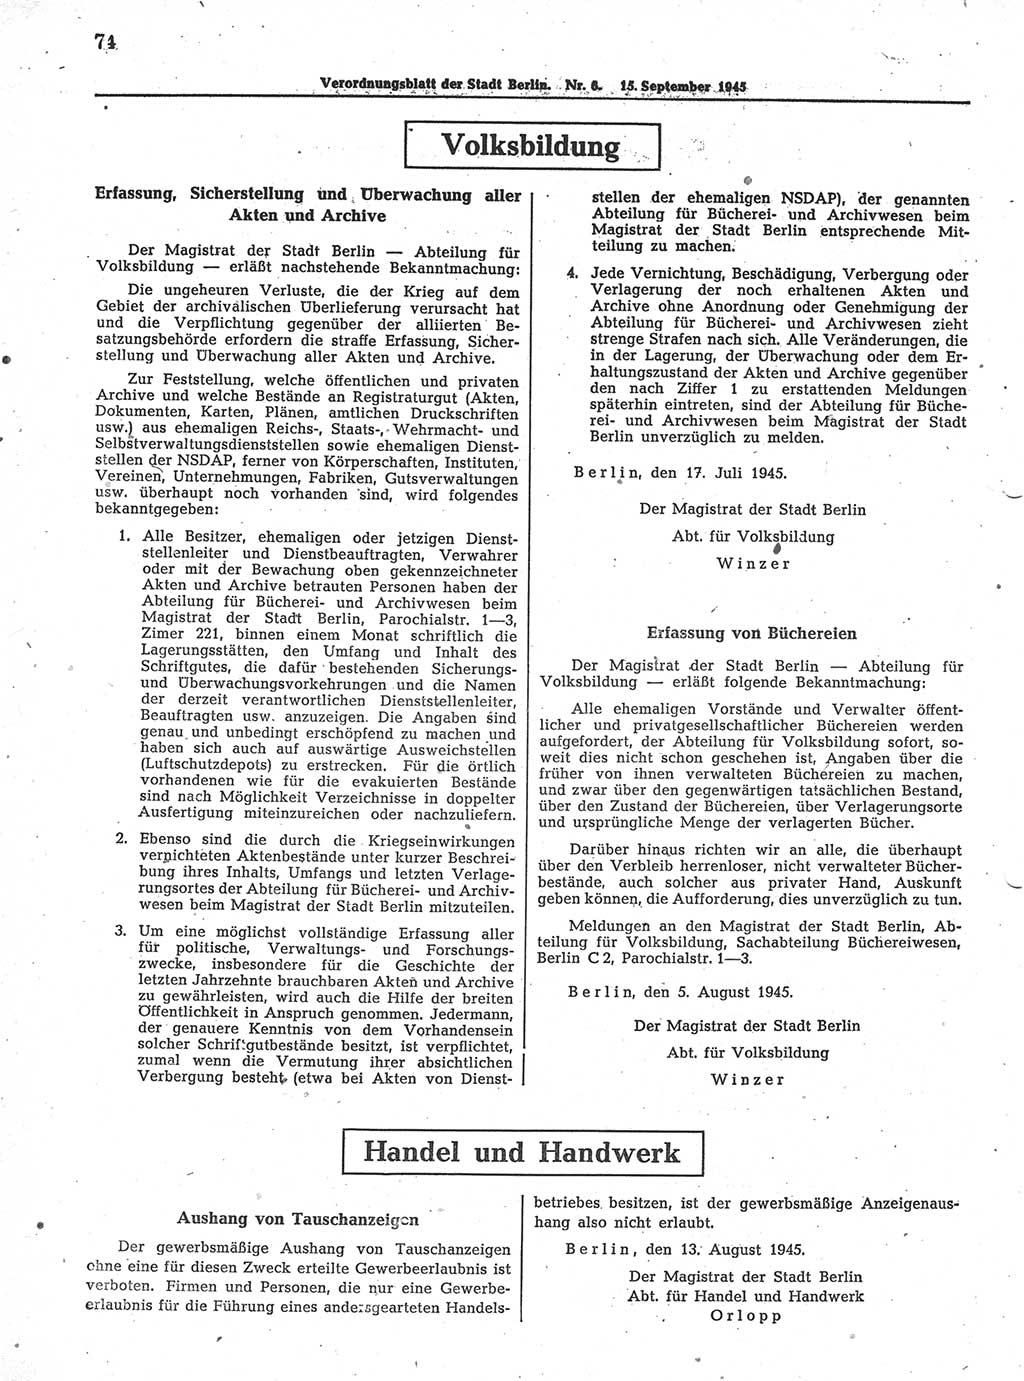 Verordnungsblatt (VOBl.) der Stadt Berlin 1945, Seite 74 (VOBl. Bln. 1945, S. 74)